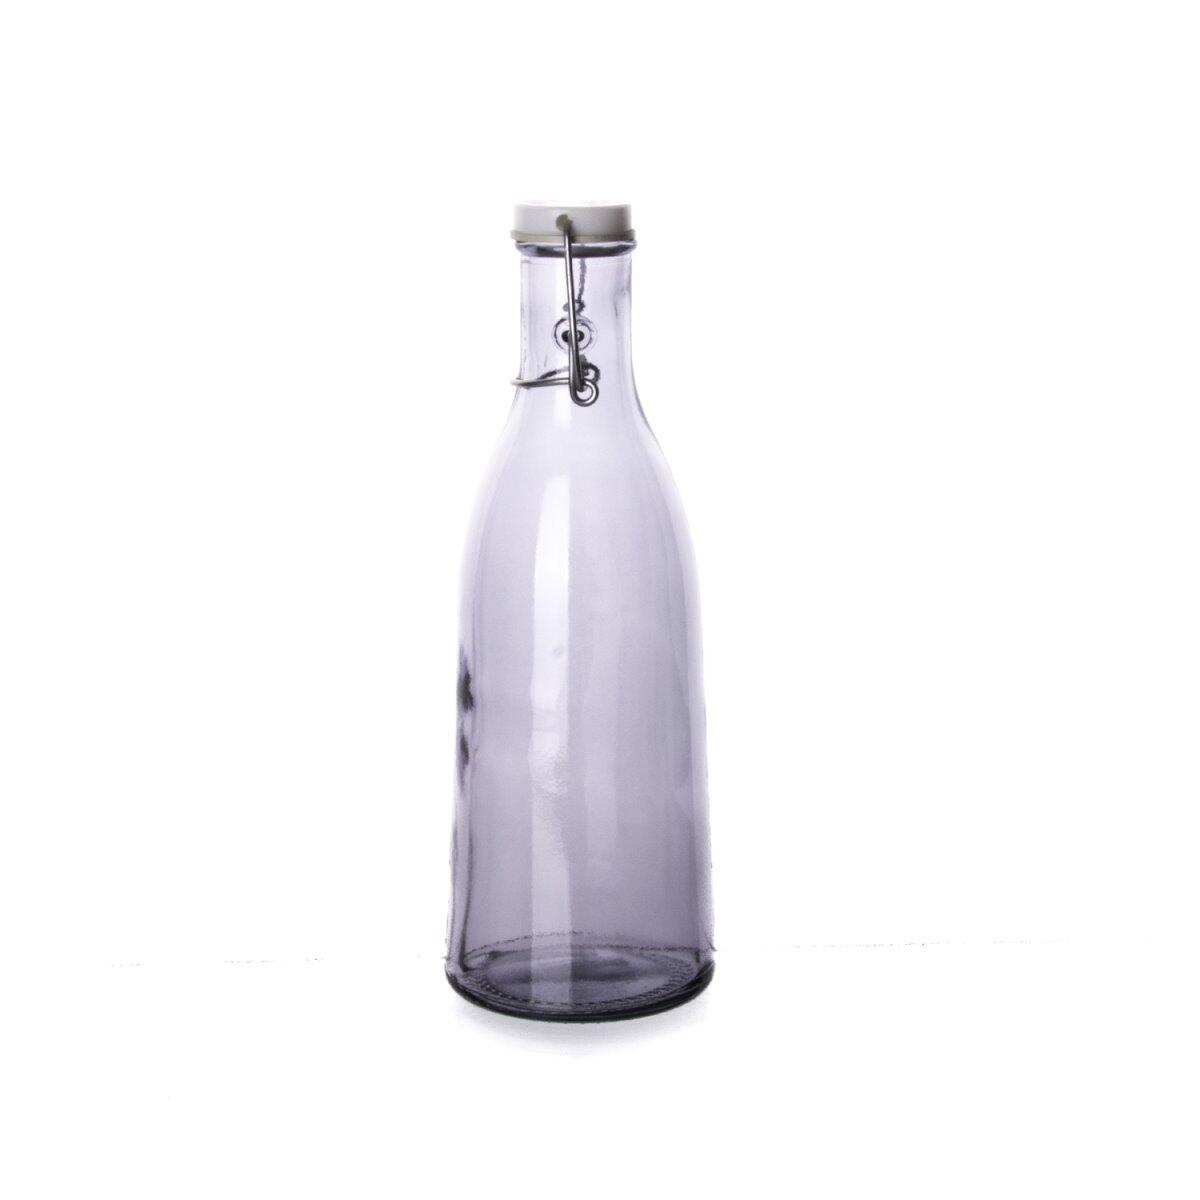 Sanmiguel Lisa Bottle 1 Liter